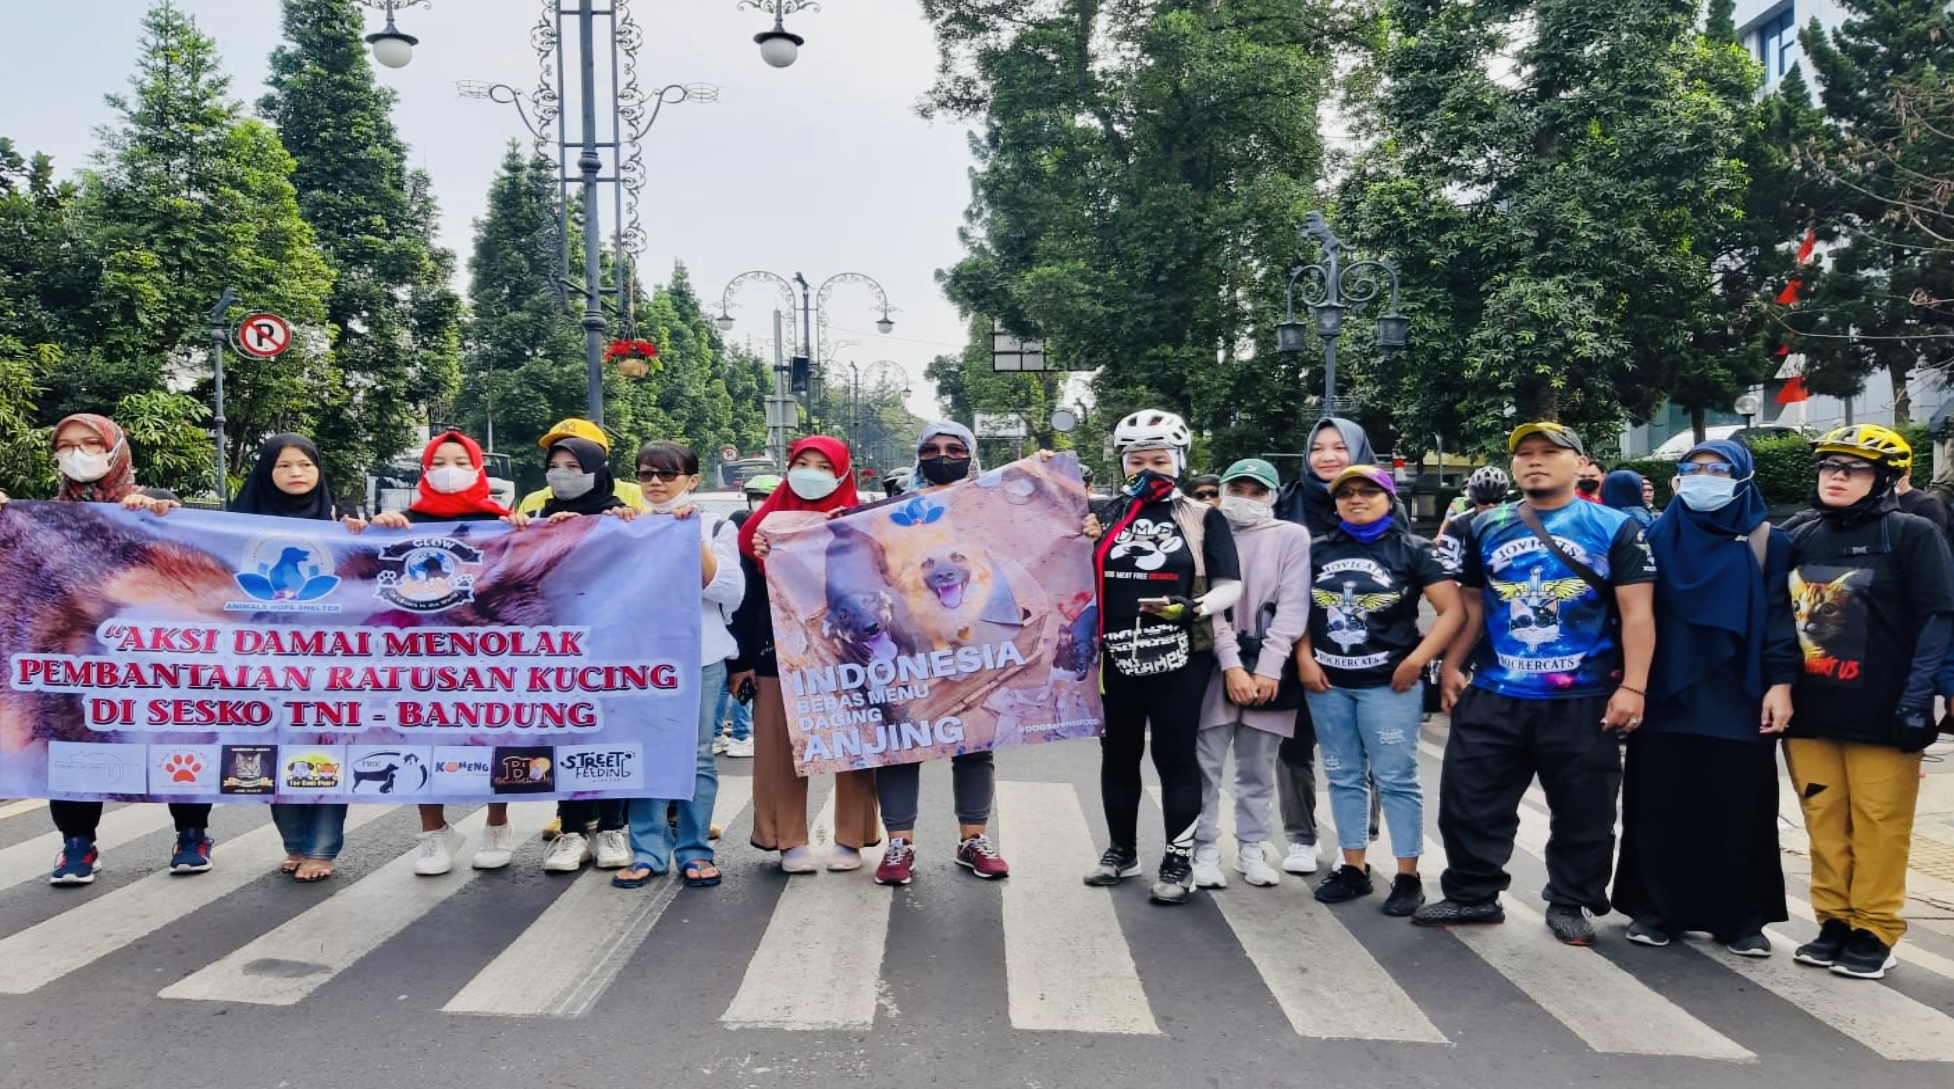 Ini Aksi Damai Para Pecinta Kucing di Bandung, Buntut dari Kejadian Penembakan Kucing di Sesko TNI